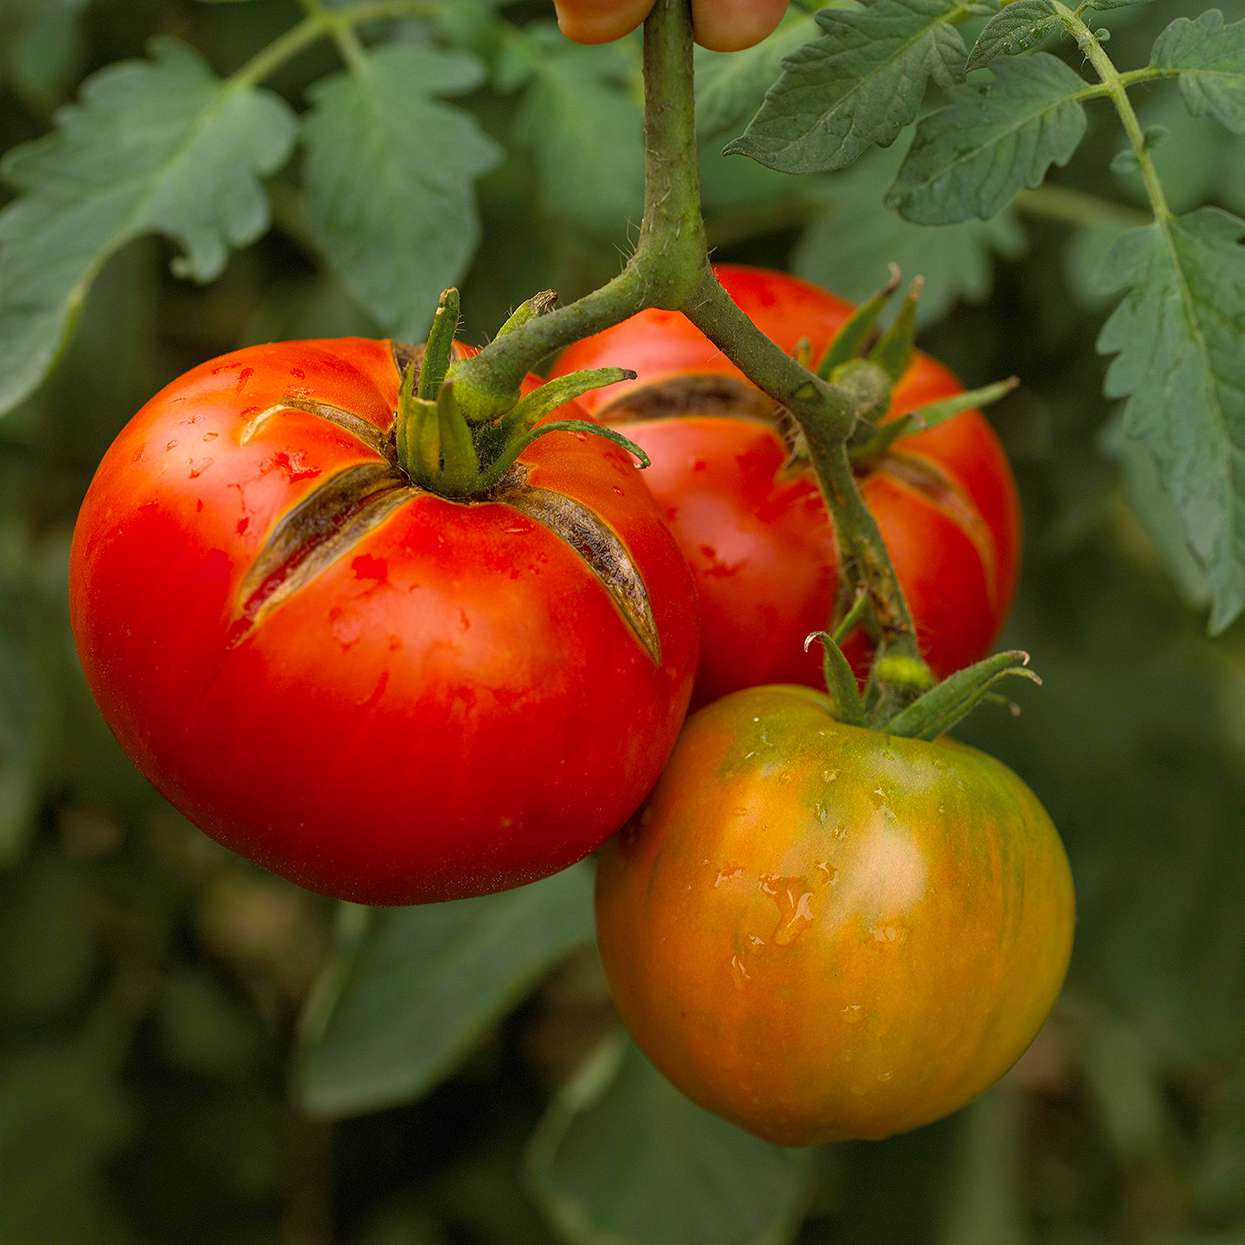 tomato 'Moskvich' variety